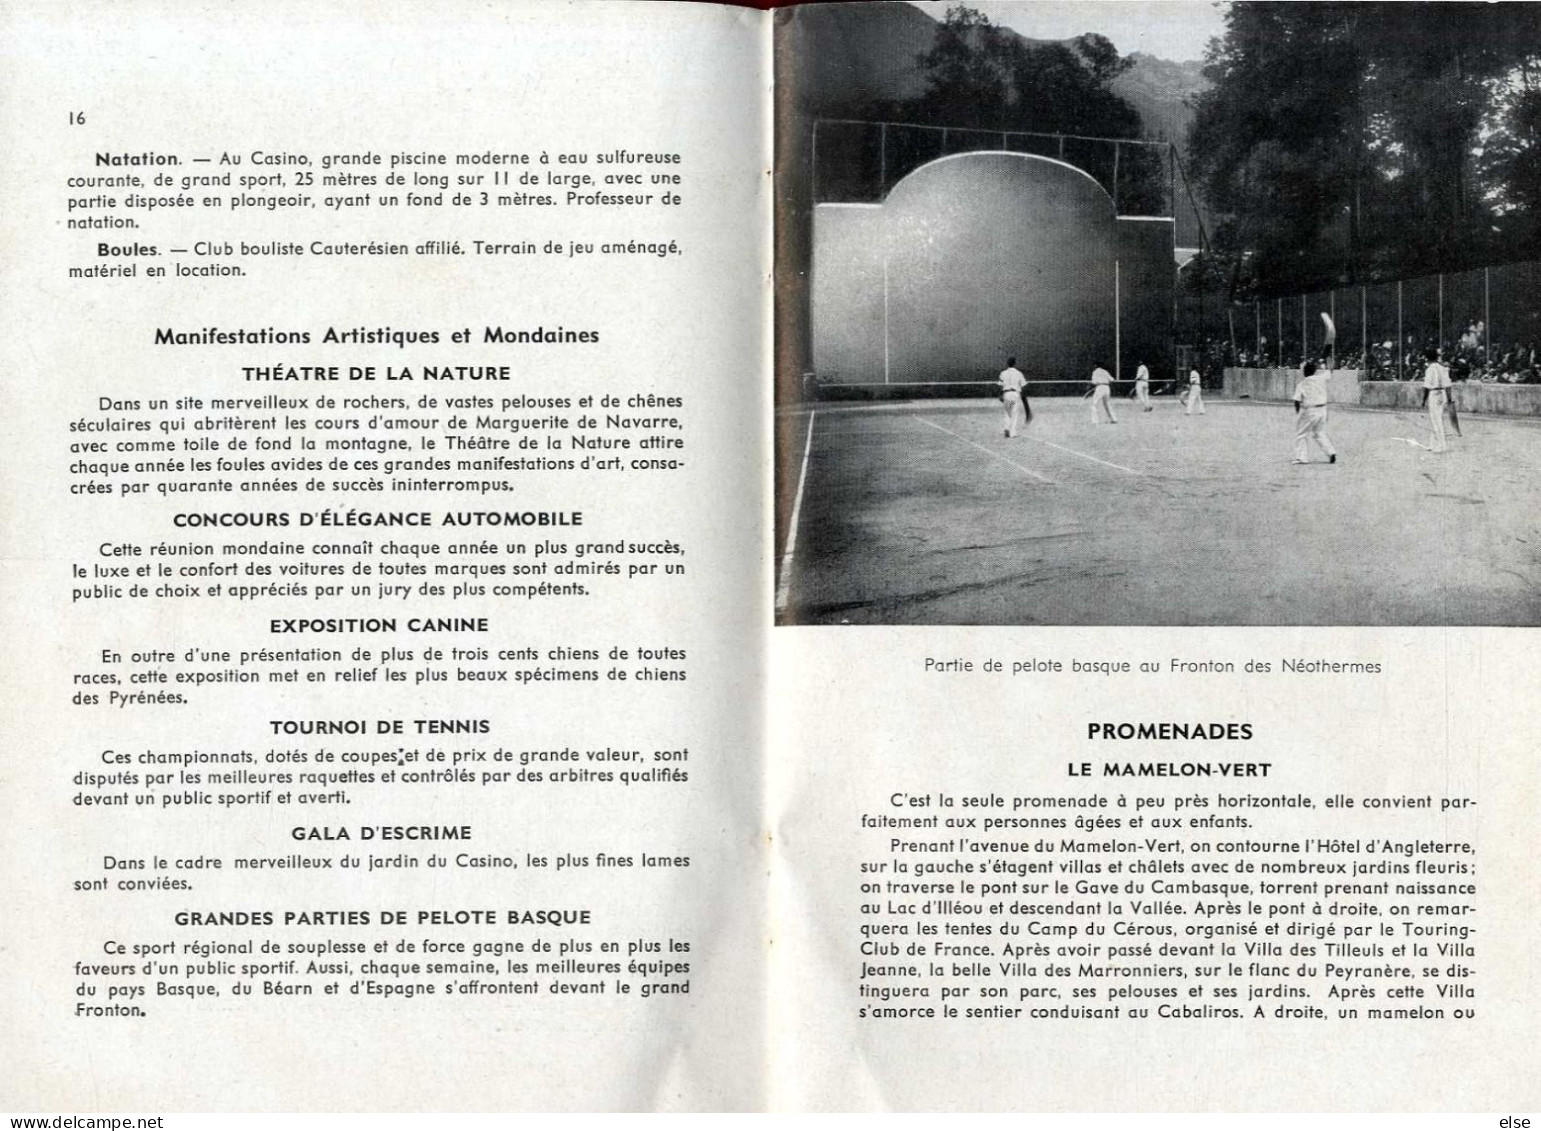 CAUTERETS  -  GUIDE PRATIQUE THERMAL TOURISTIQUE  -  1948  -  LIVRE COMPRENAND 55 PAGES - Midi-Pyrénées